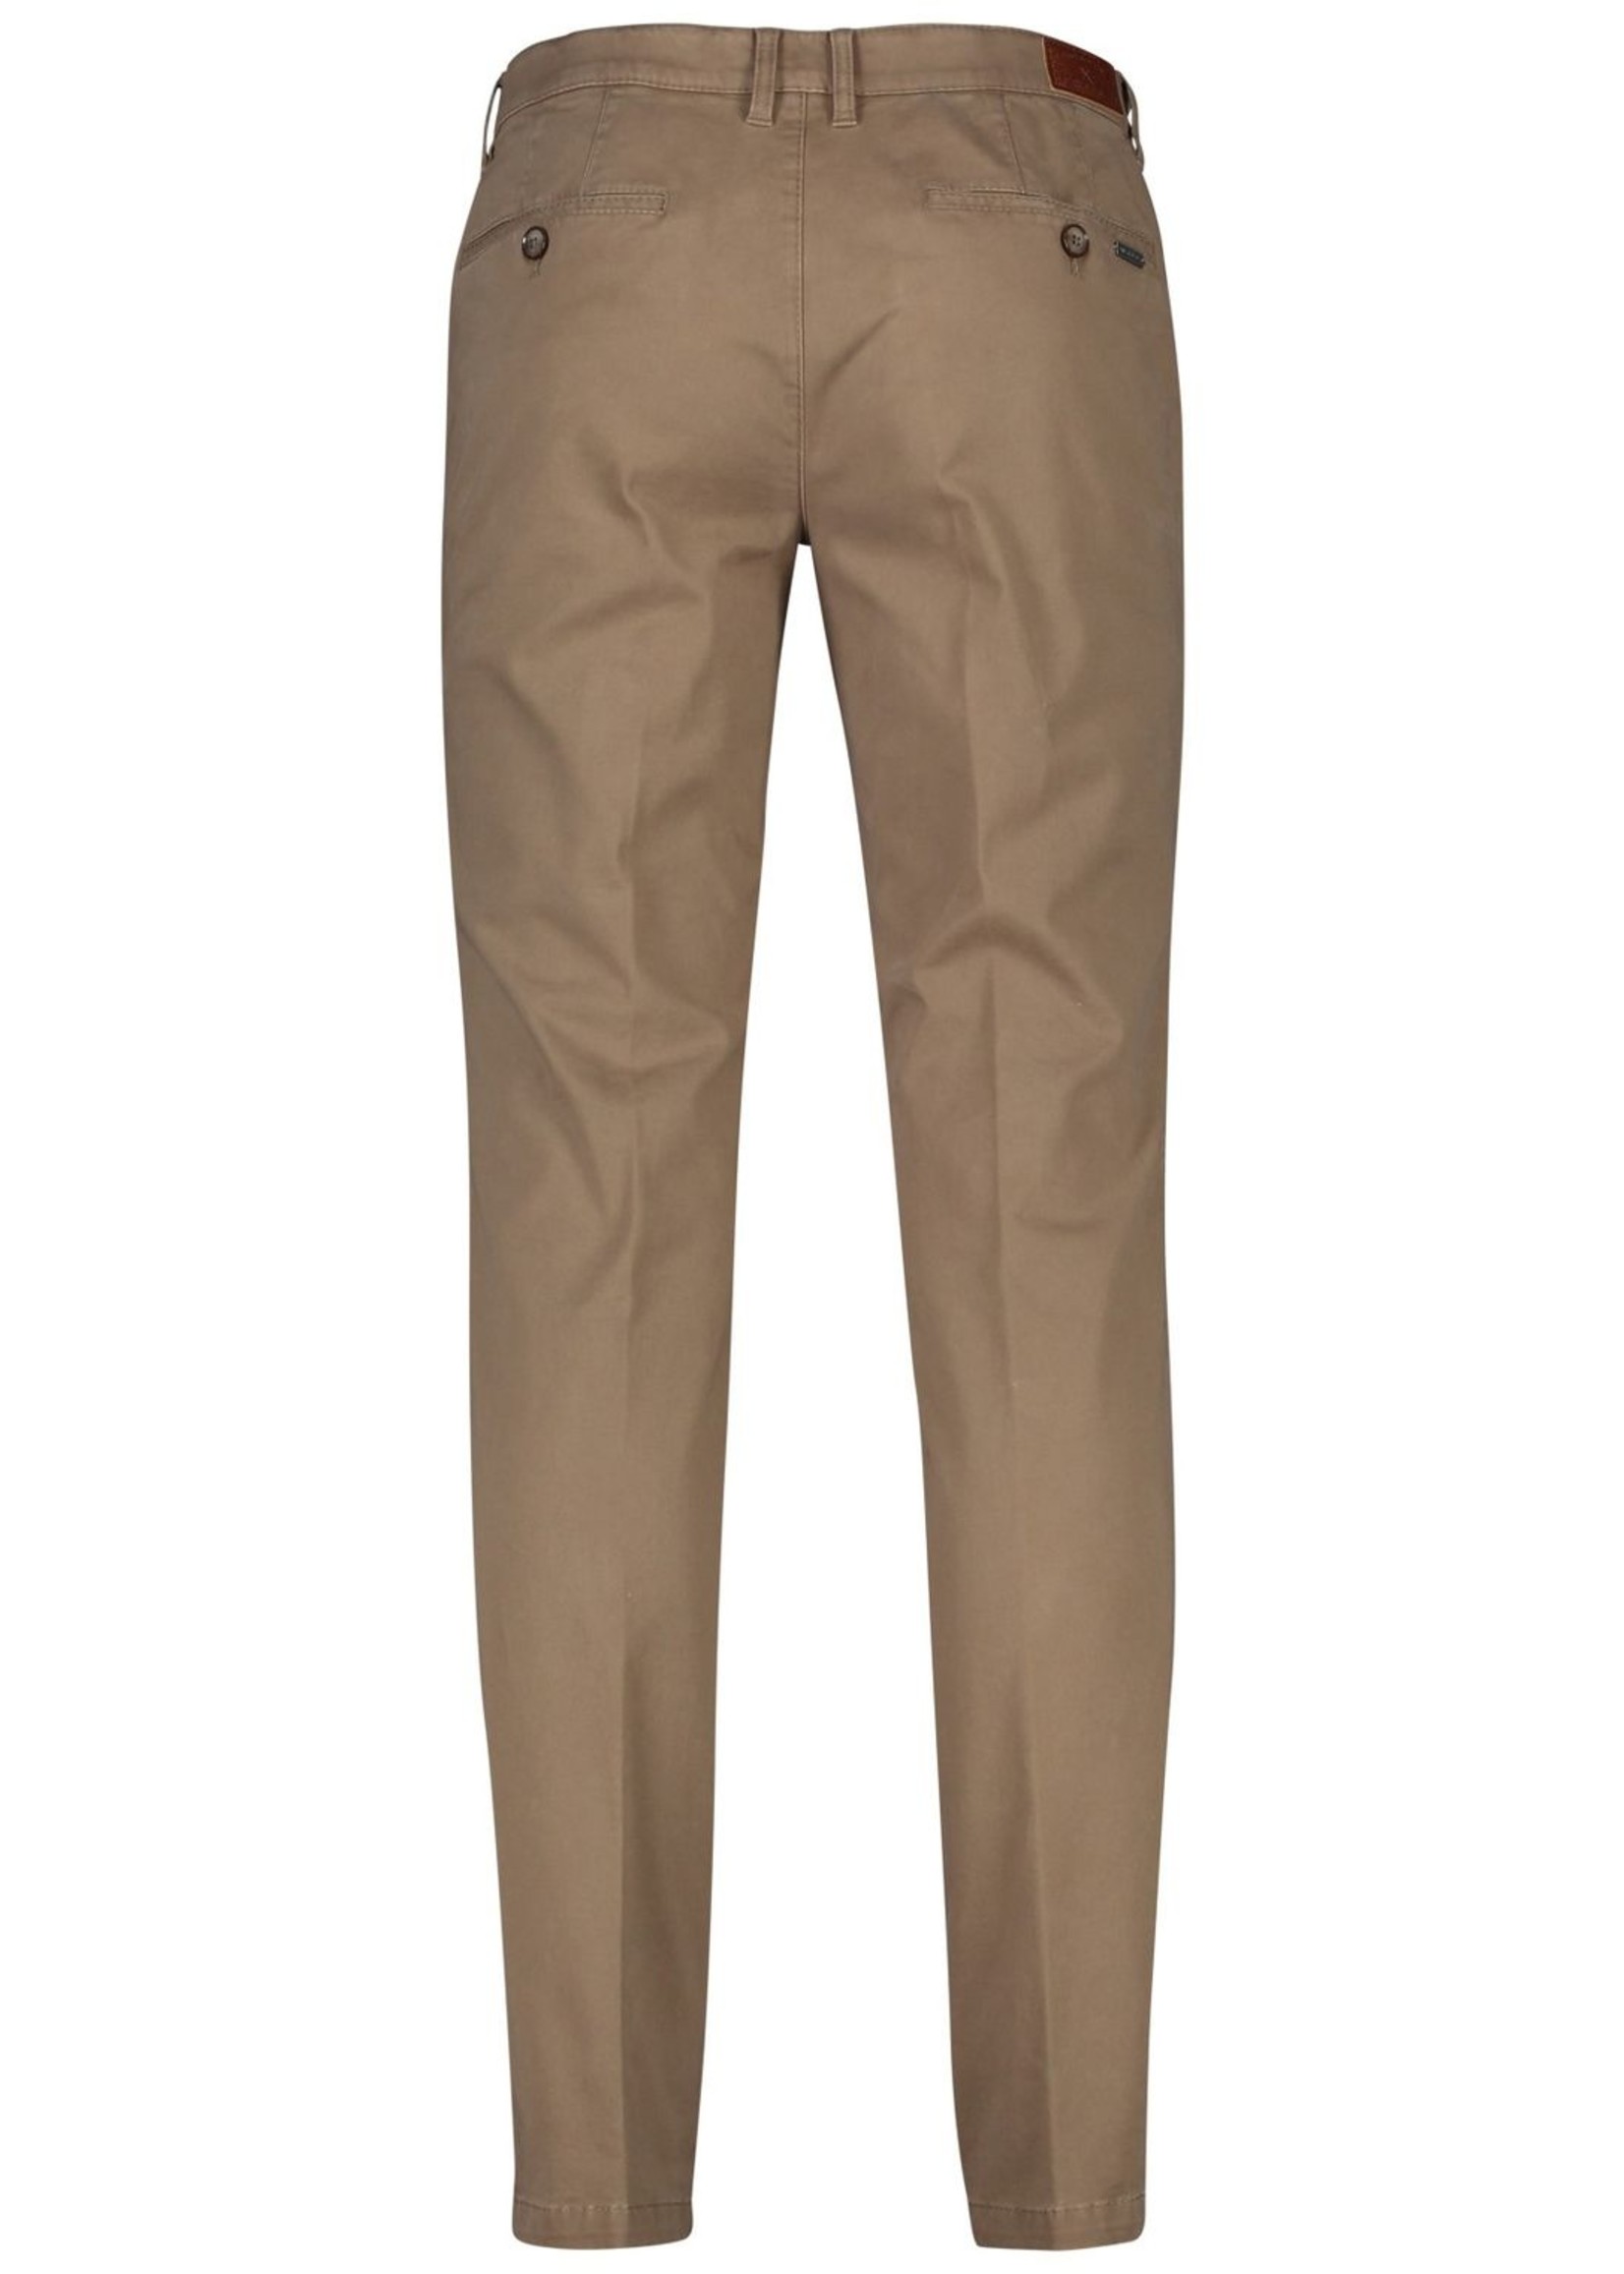 M.E.N.S. Pantalon en coton extensible style Madison-4762